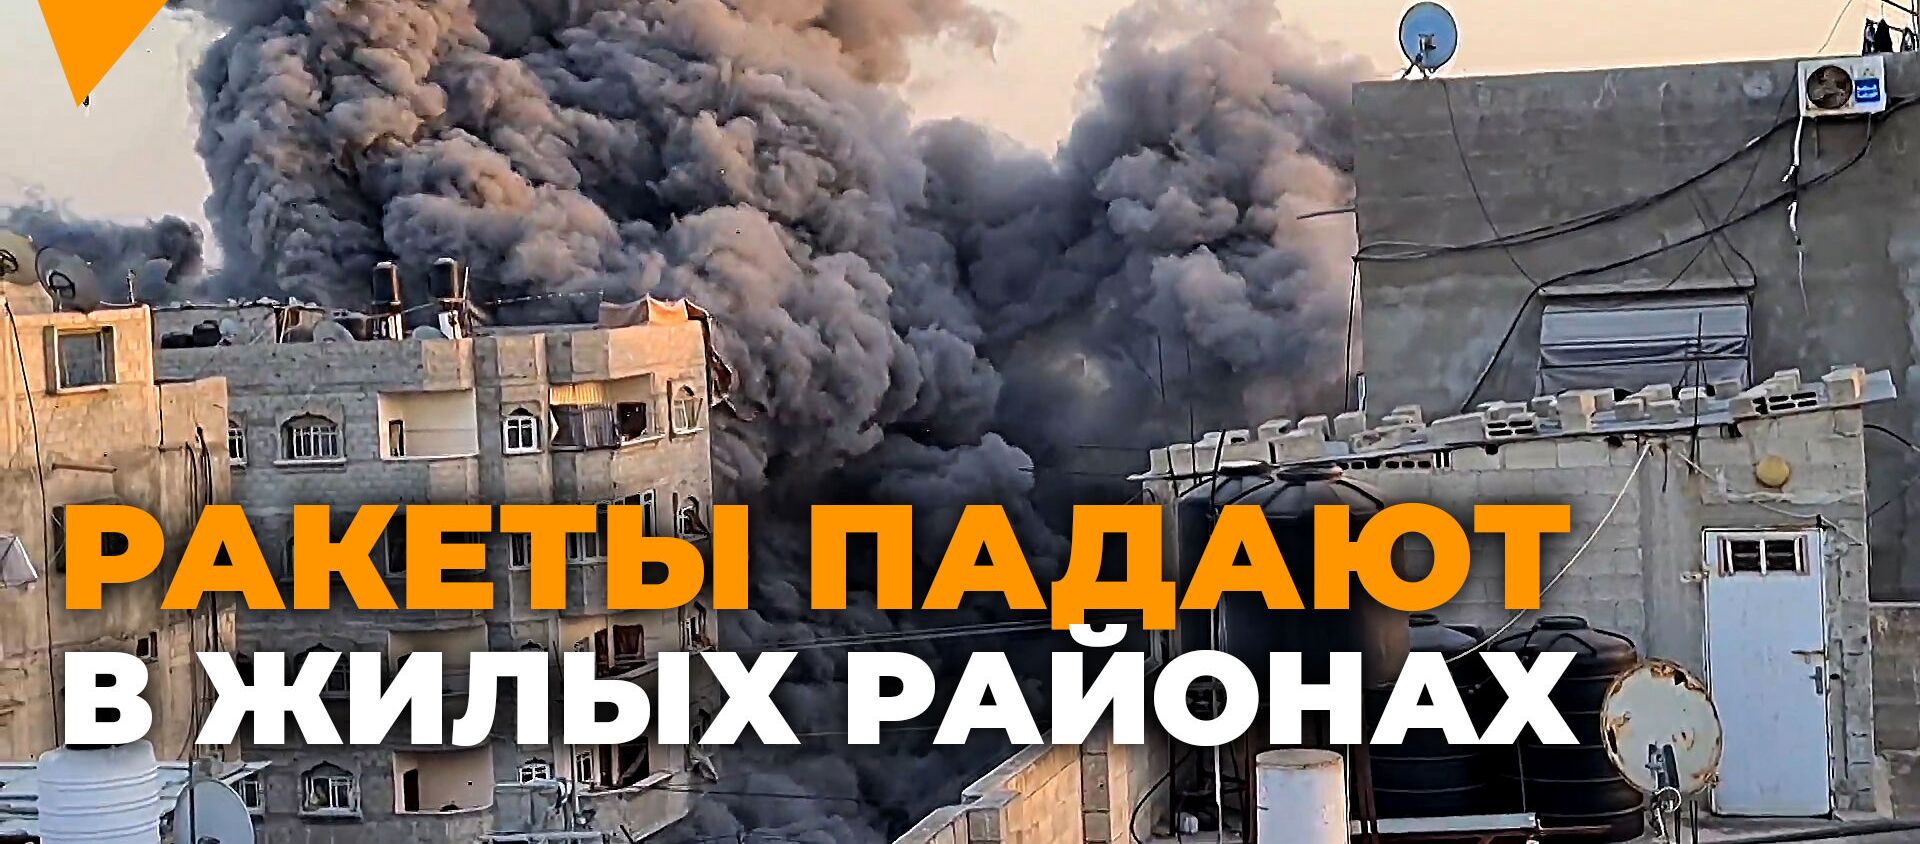 После ракетного удара здание обрушилось за секунды — видео из сектора Газа - Sputnik Кыргызстан, 1920, 17.05.2021